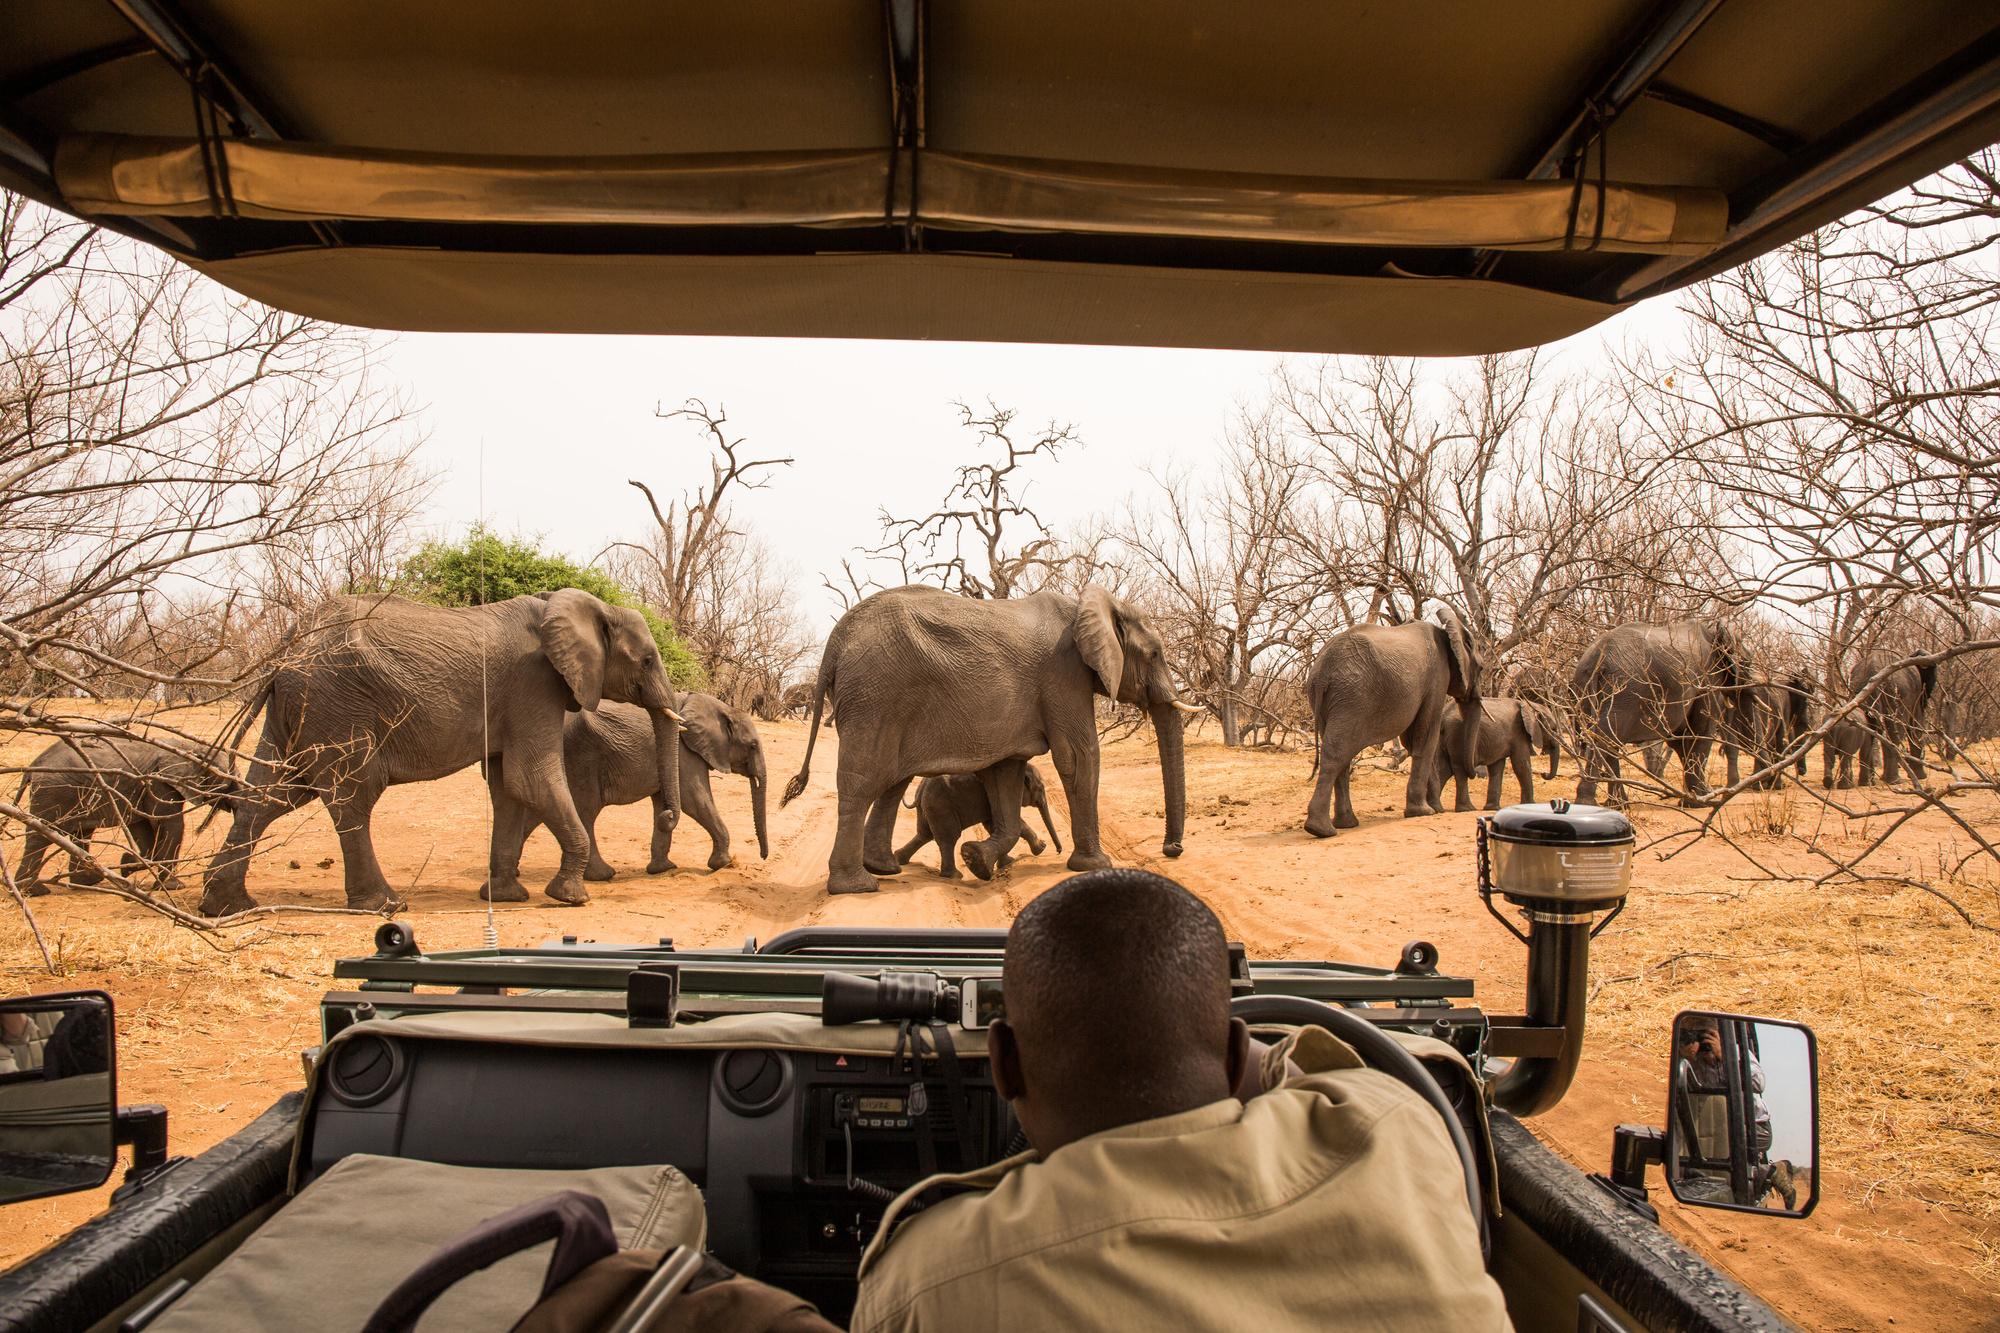 Road vs Air safari